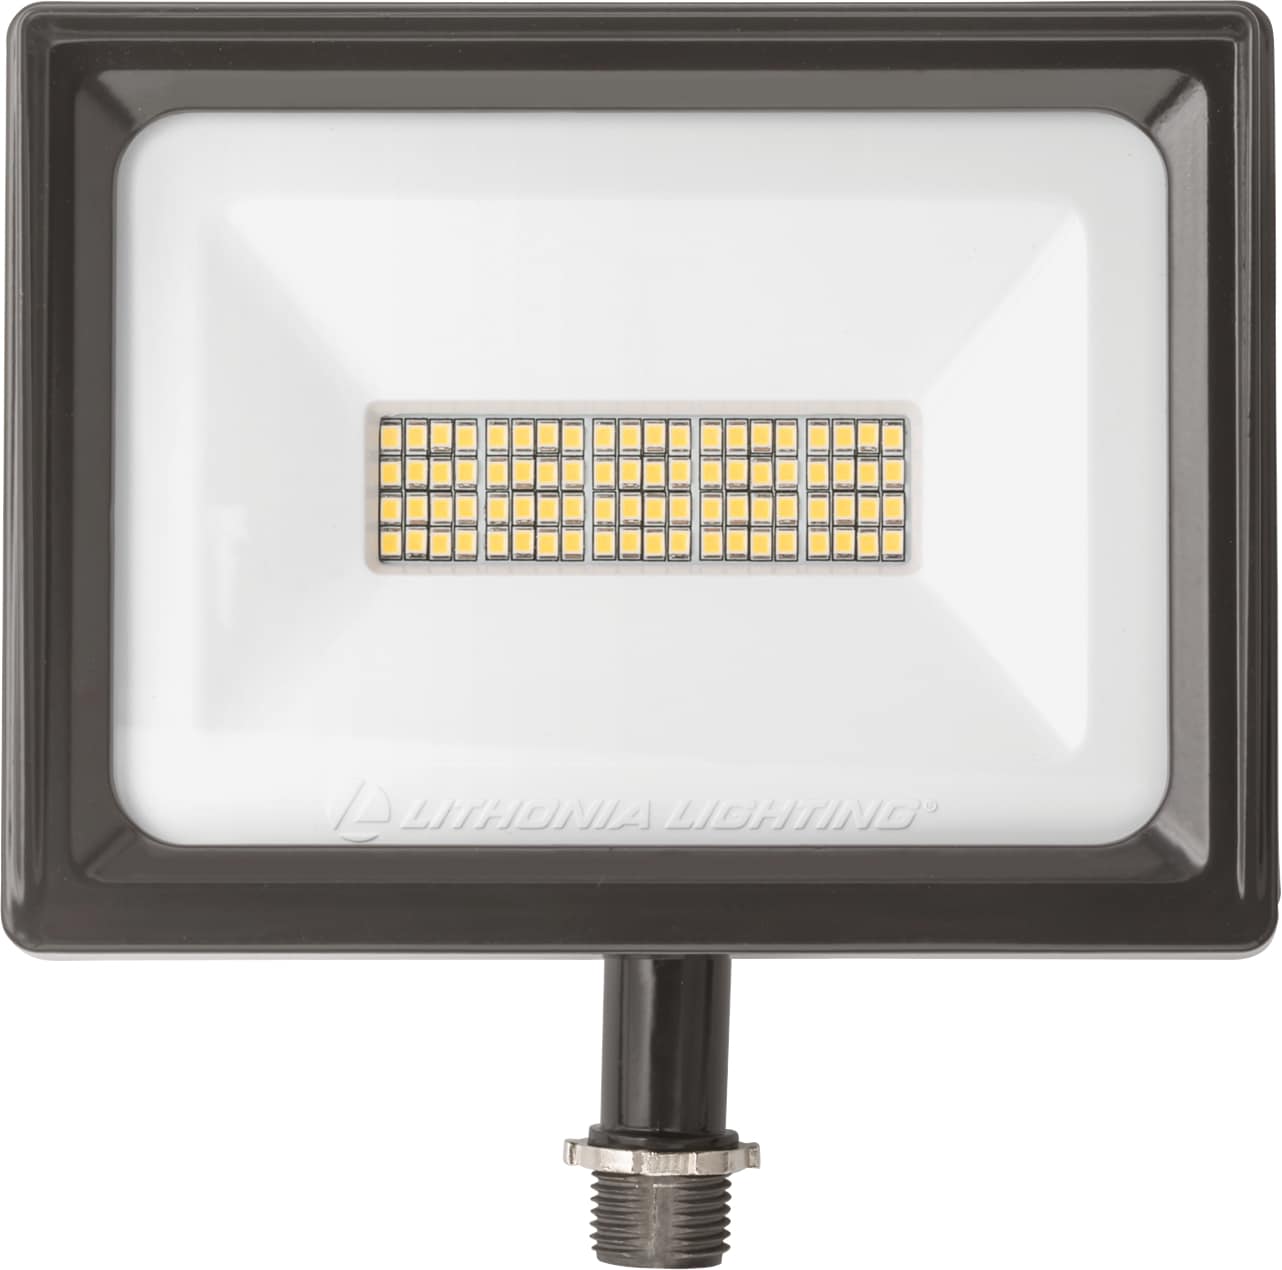 LED Mini Flood Light, Knuckle Mount, Black, 45W, 5600 Lumens